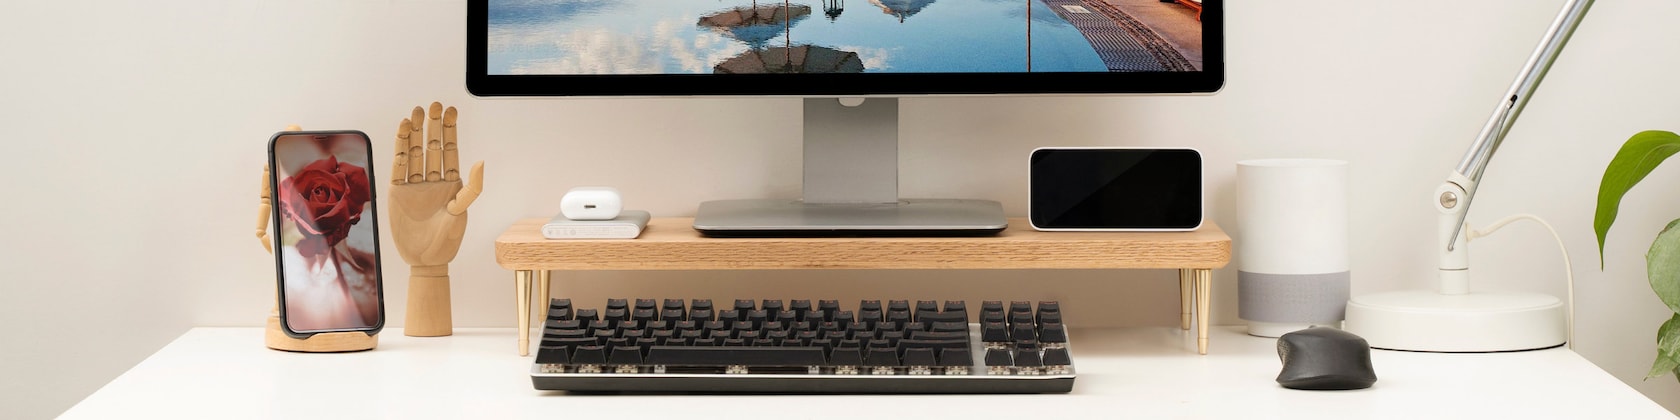 Support écran avec tiroir - Pour votre ordinateur de bureau – Craft  Kittiesfr